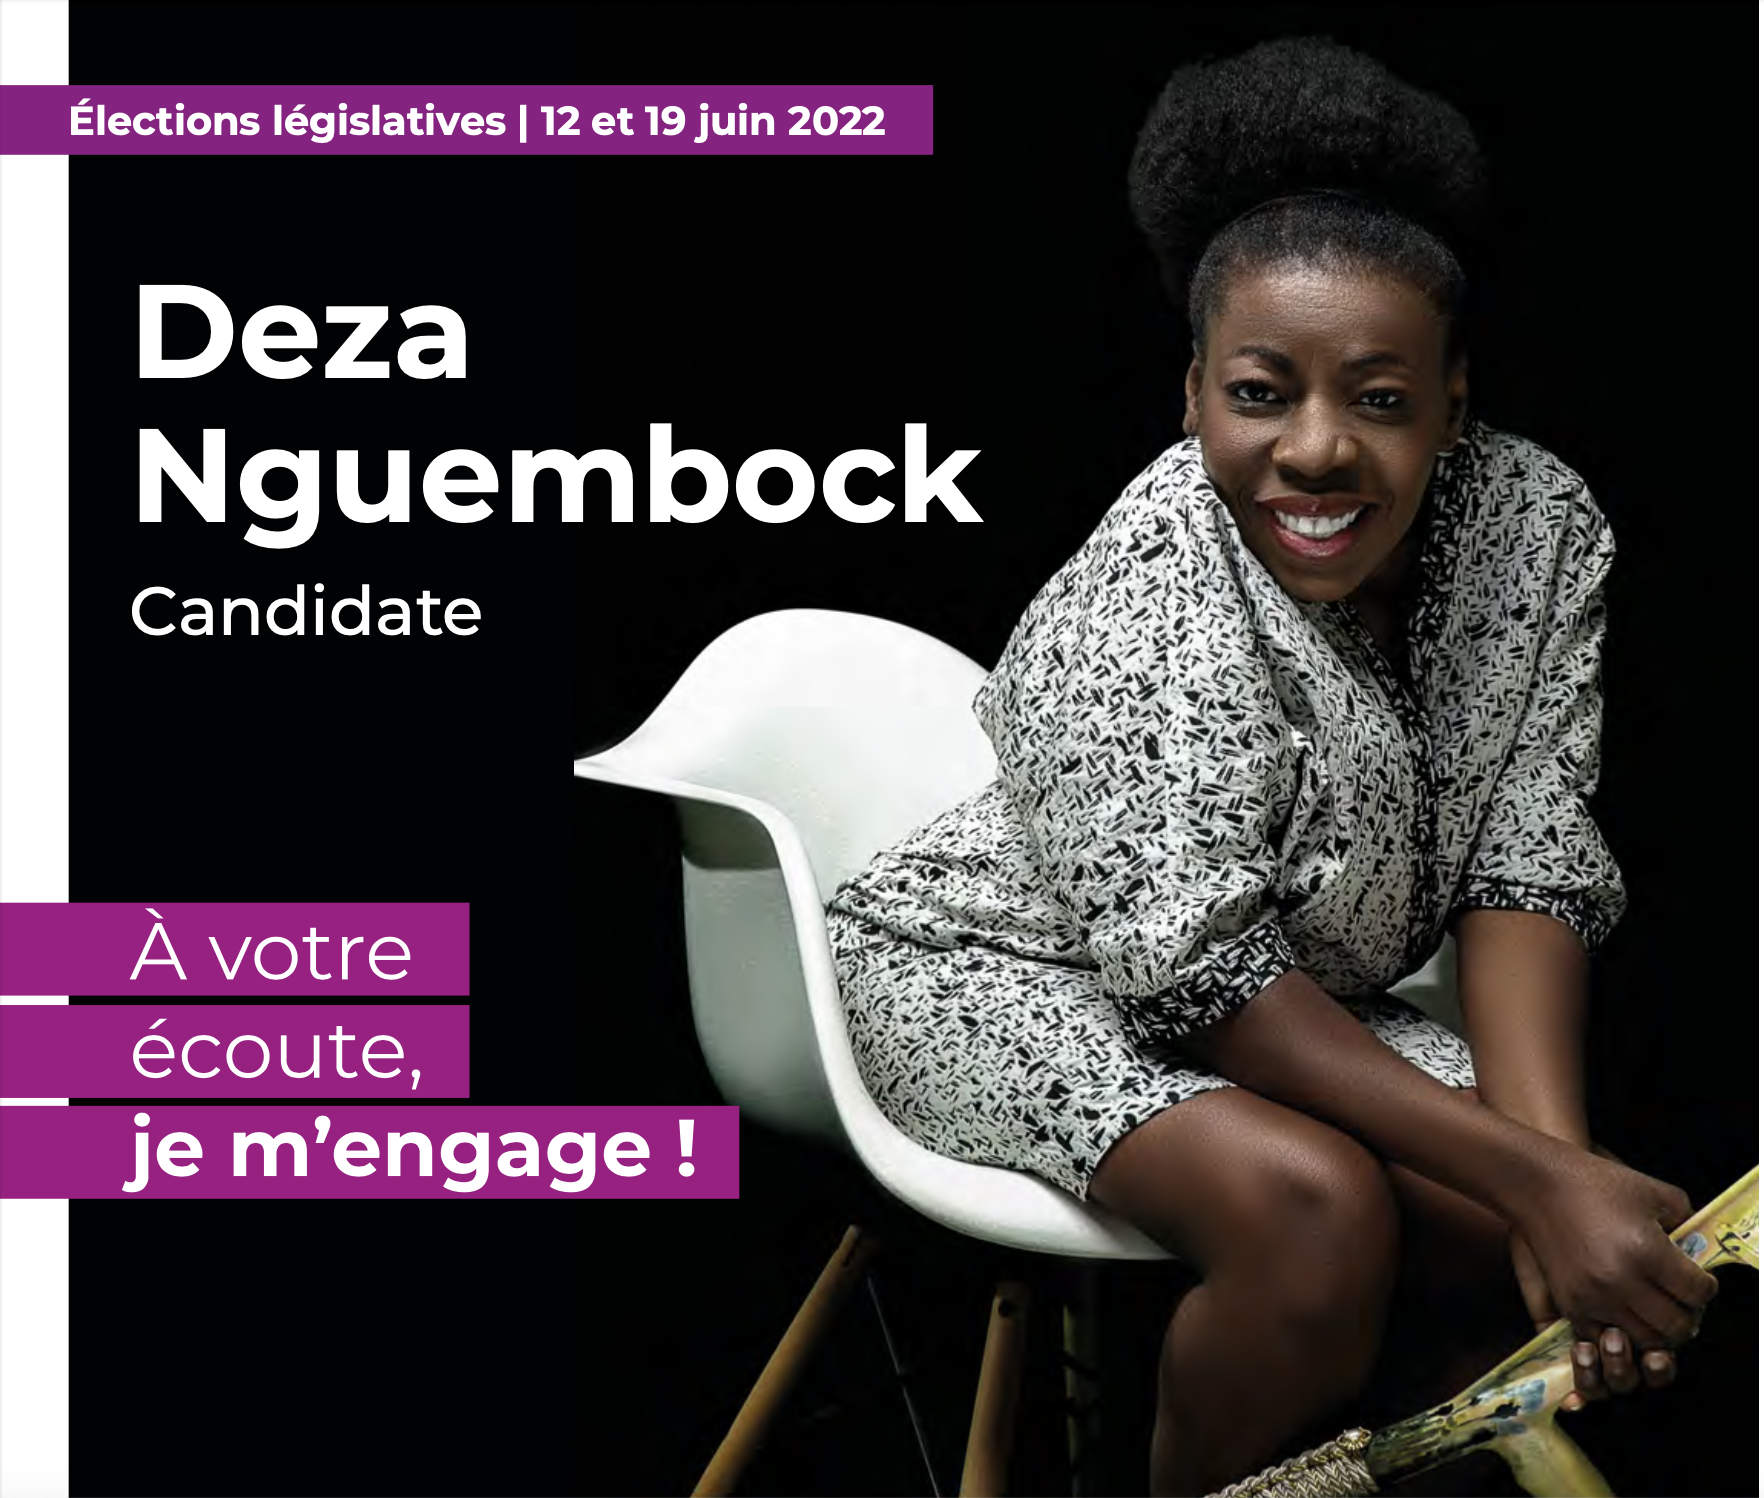 Une affiche qui met en avant Deza Nguembock. un fond noir et Deza assise sur une chaise, cela attire l'attention. A coté de la photo, il y a un texte écrit 